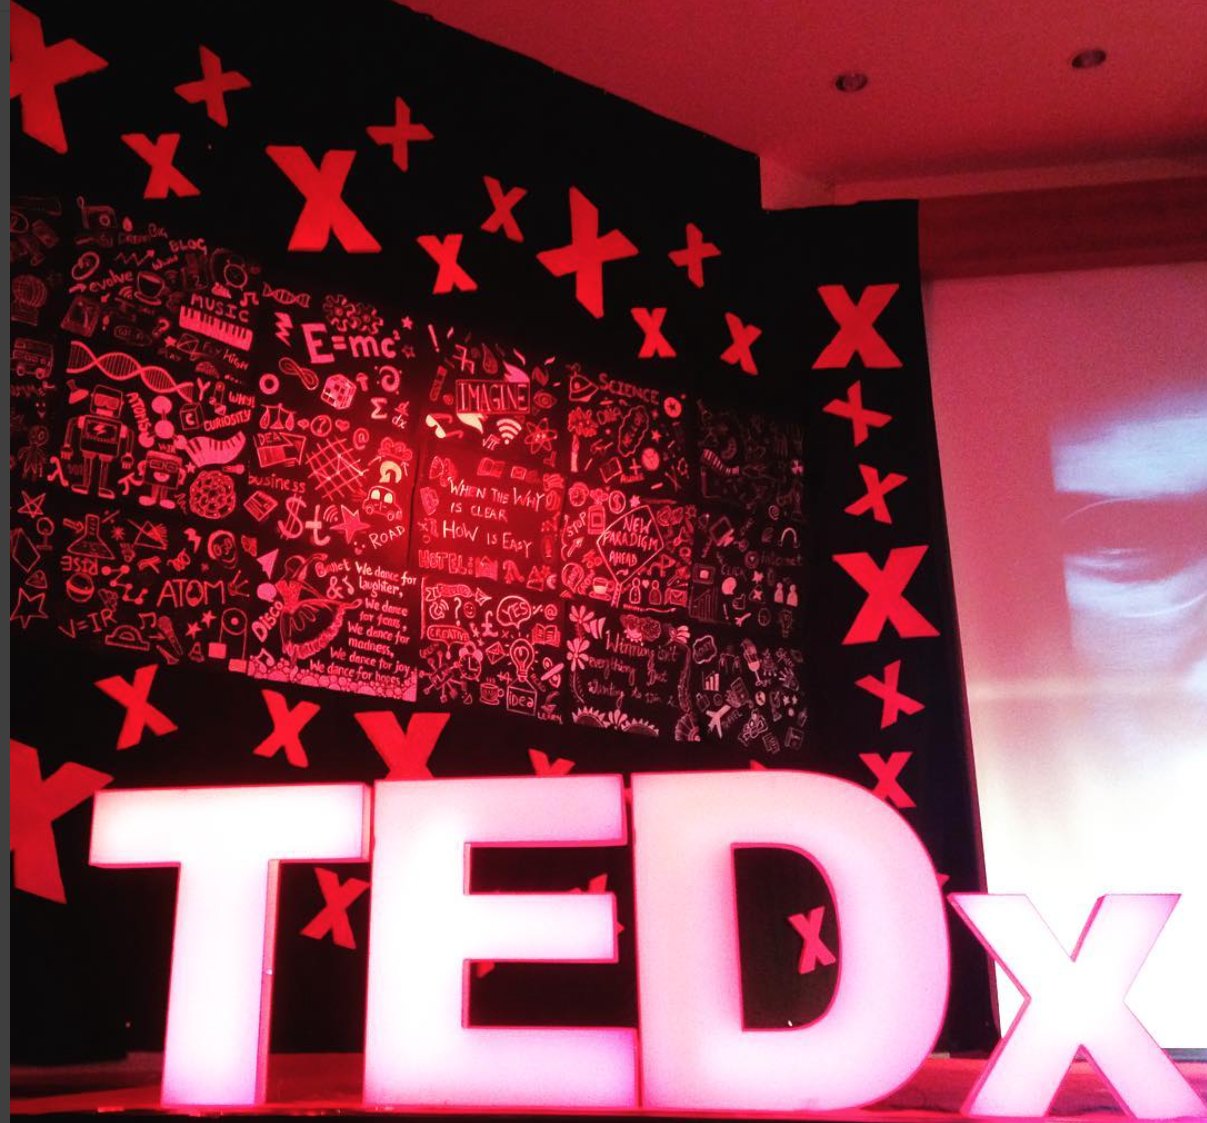 Speaker At TEDx